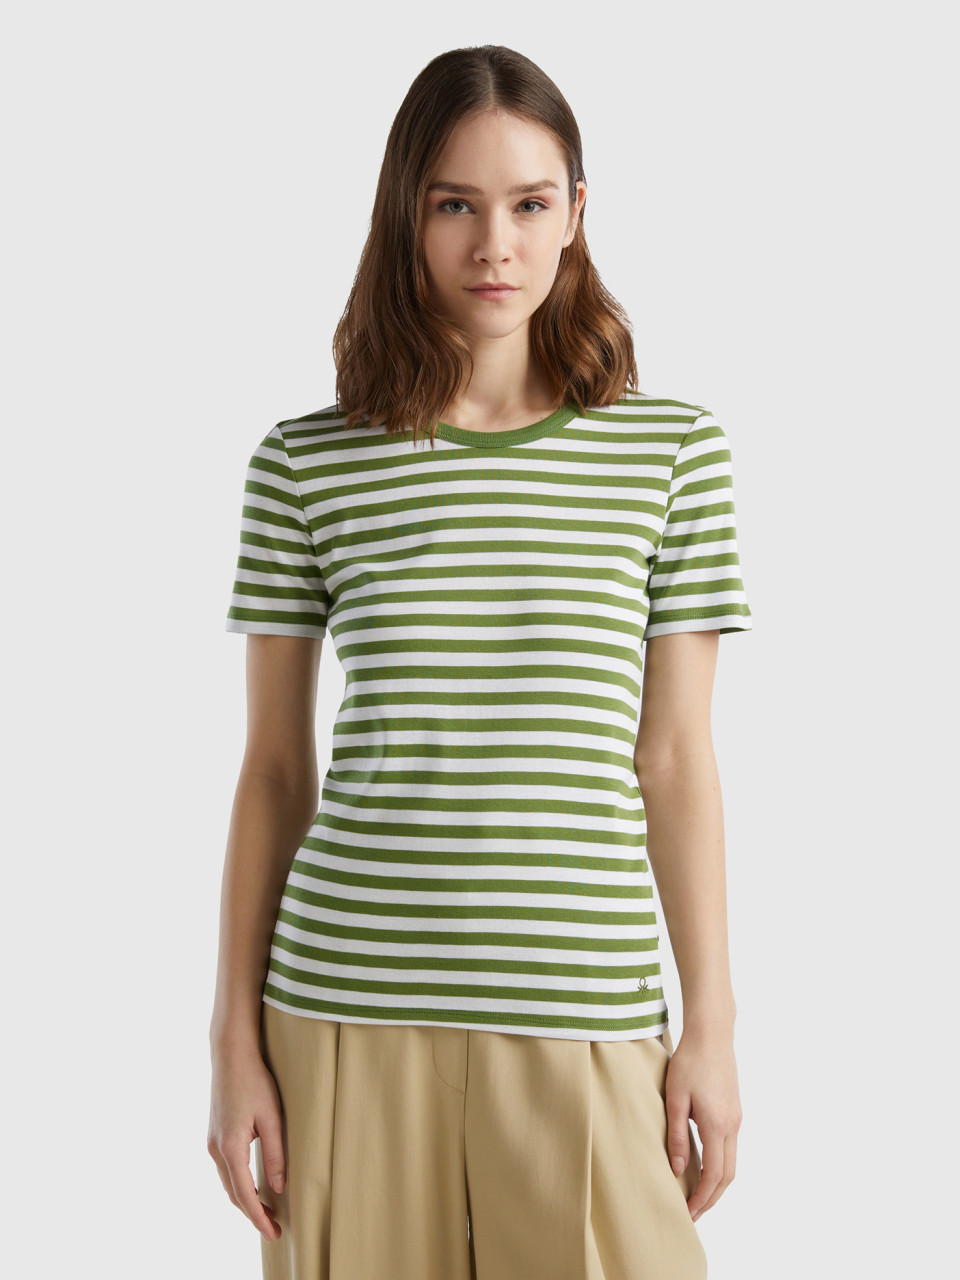 Benetton, Crew Neck Striped T-shirt, Green, Women